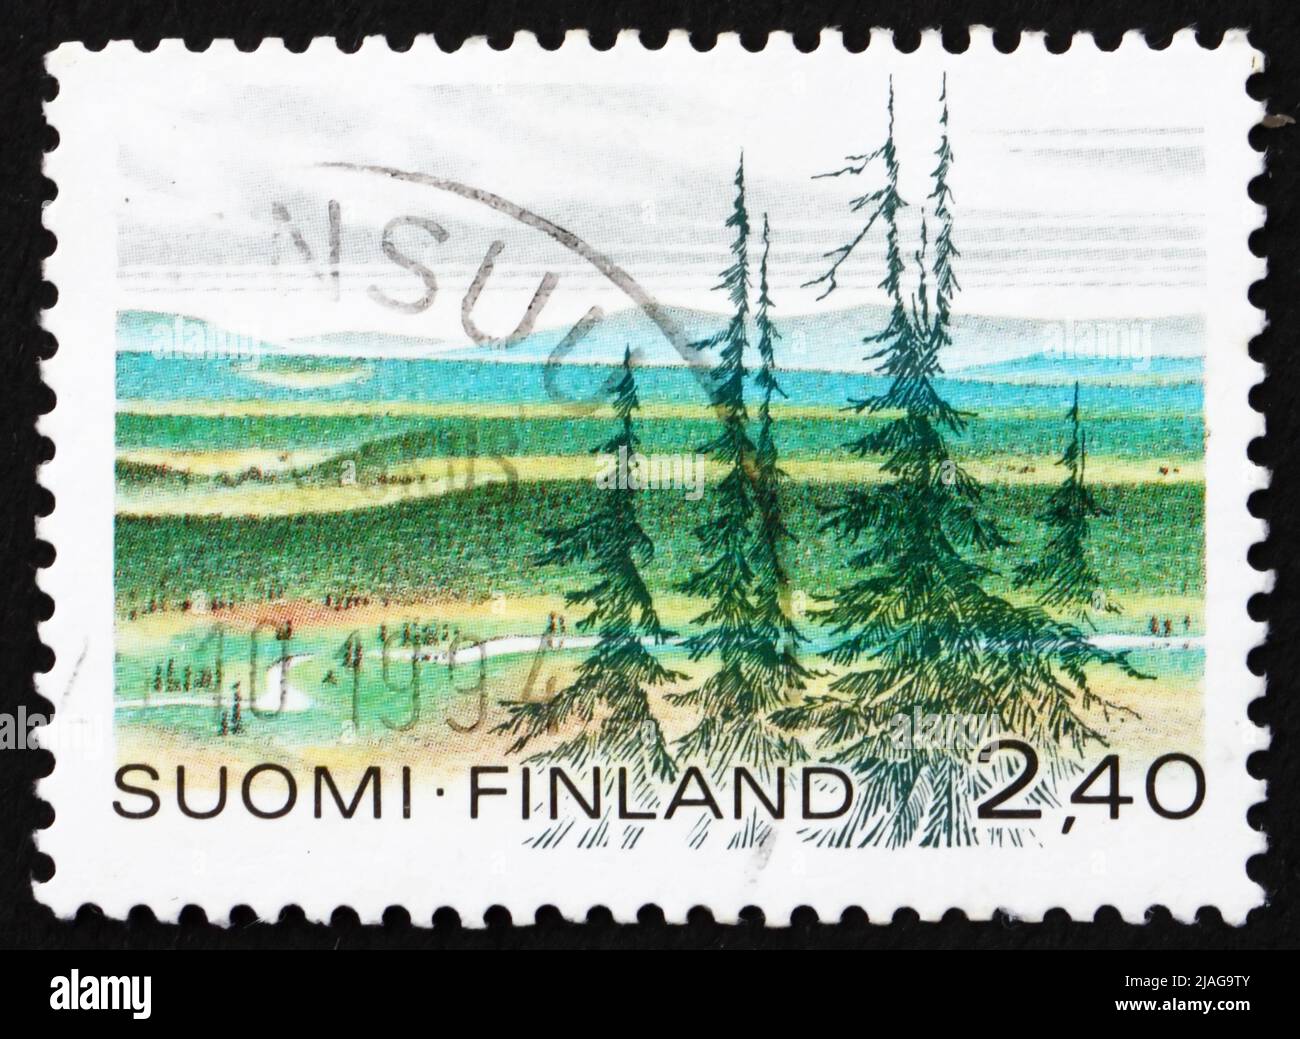 FINLANDE - VERS 1988 : un timbre imprimé en Finlande montre le parc national Urho Kekkonen, vers 1988 Banque D'Images